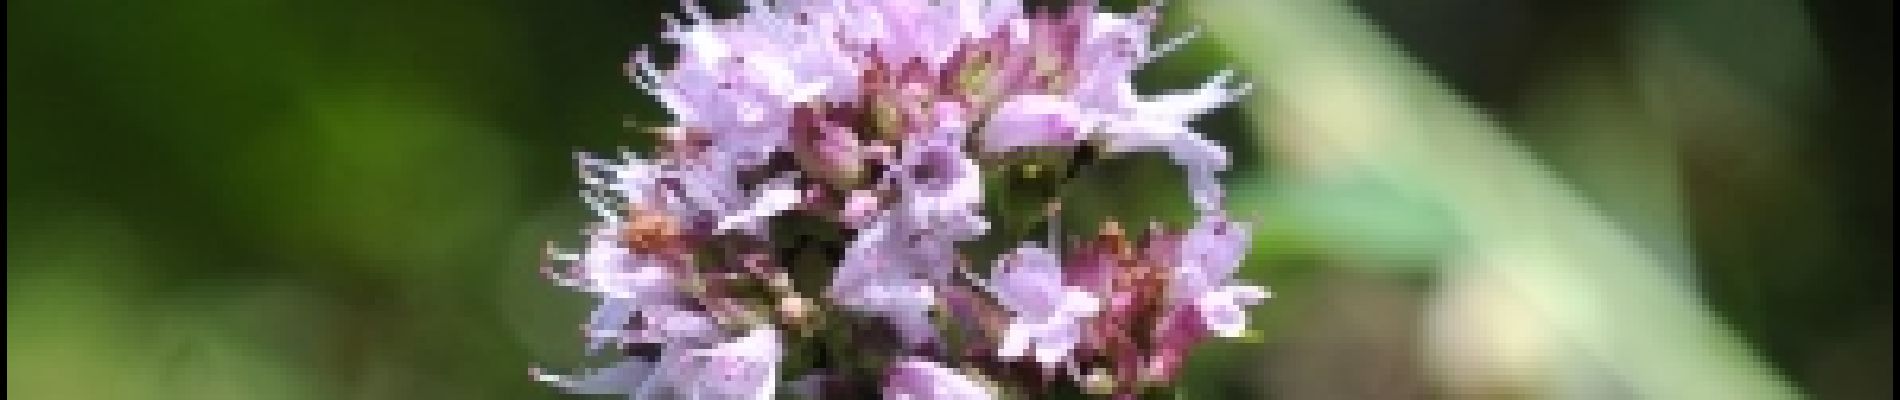 Punto di interesse Chimay - 2 - Fleurs des voies ferrées - Photo